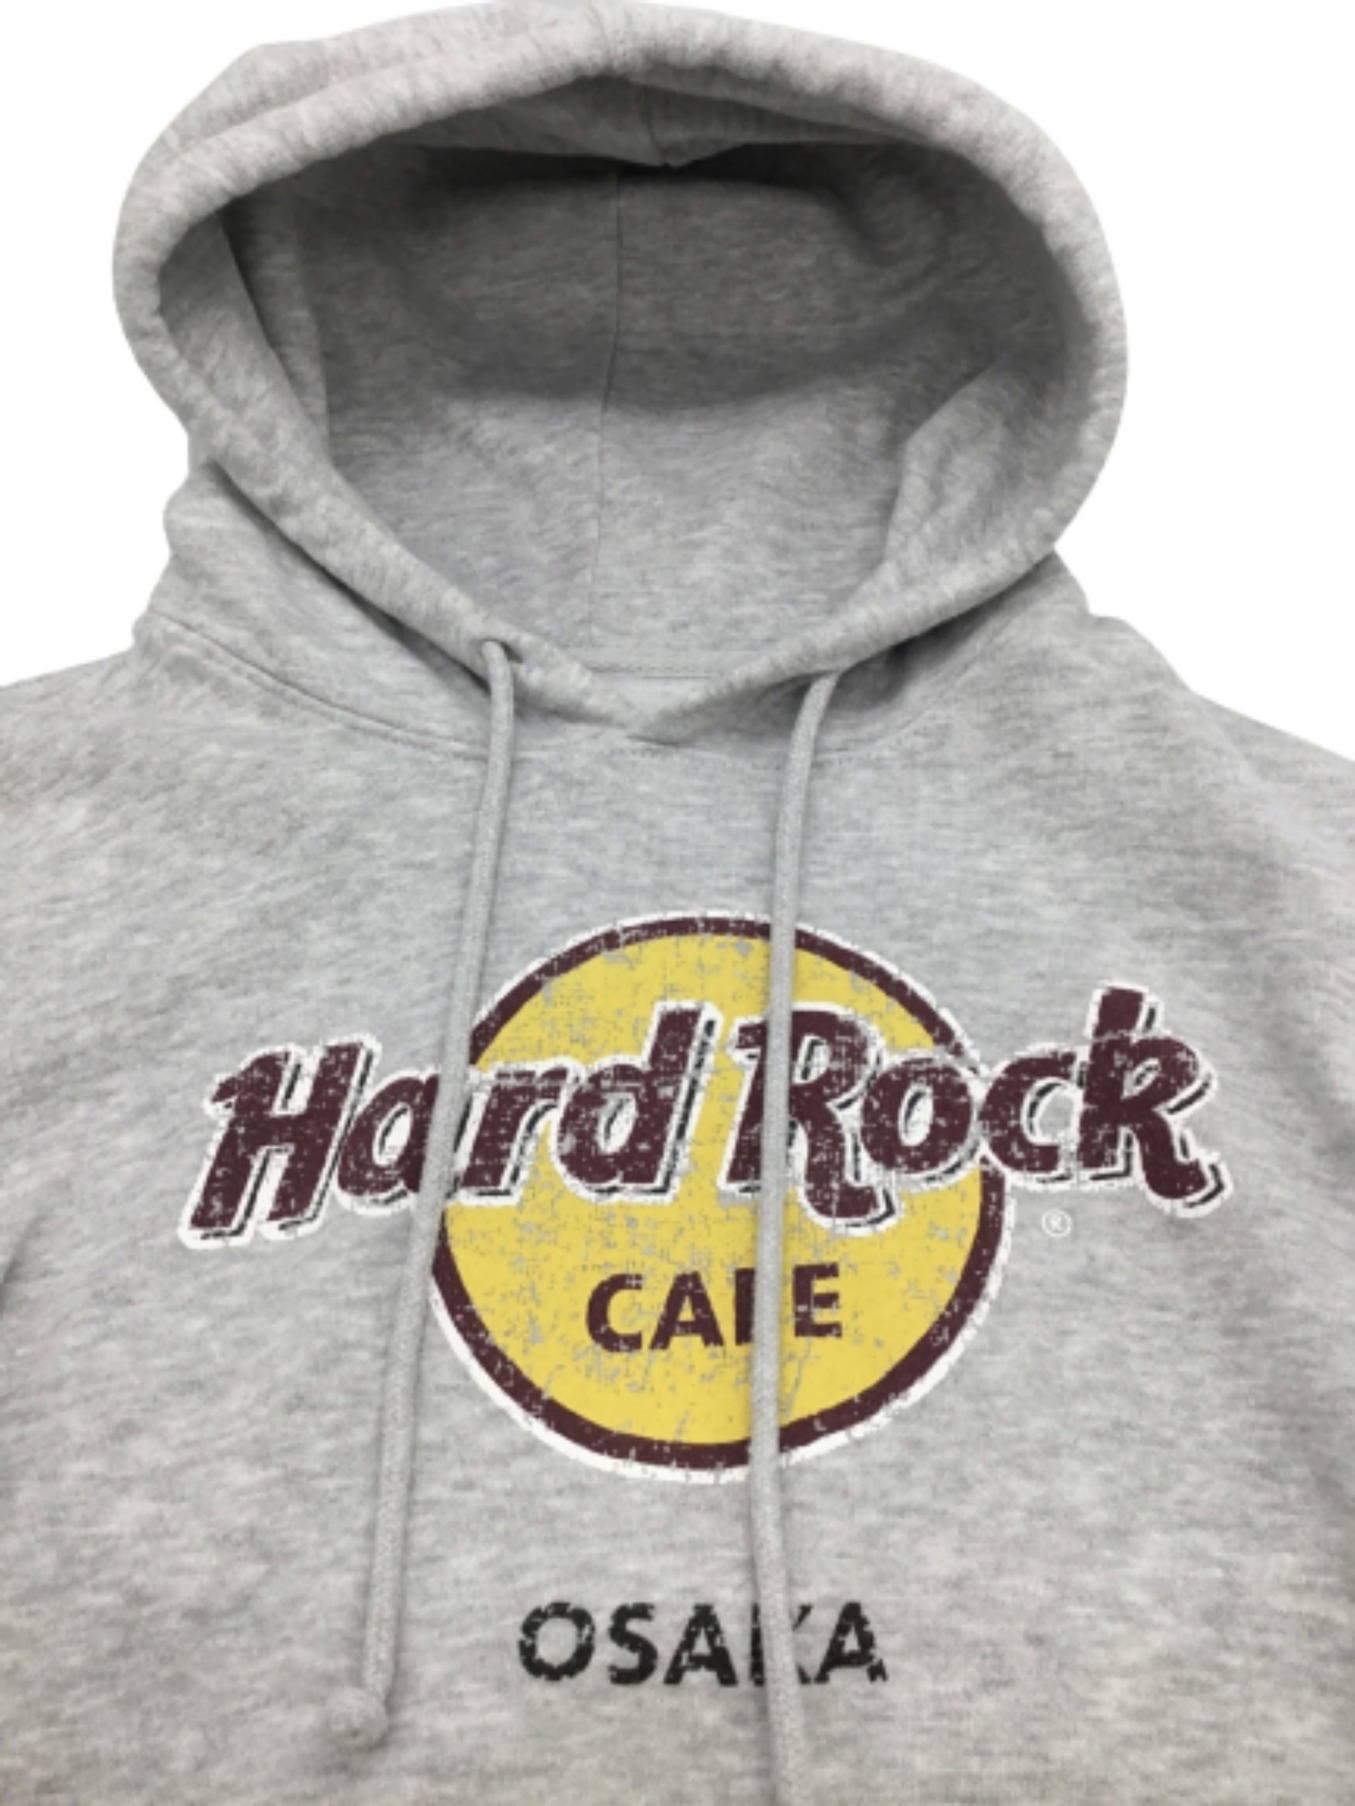 Hard Rock cafe (ハードロックカフェ) プルオーバーパーカー グレー サイズ:S